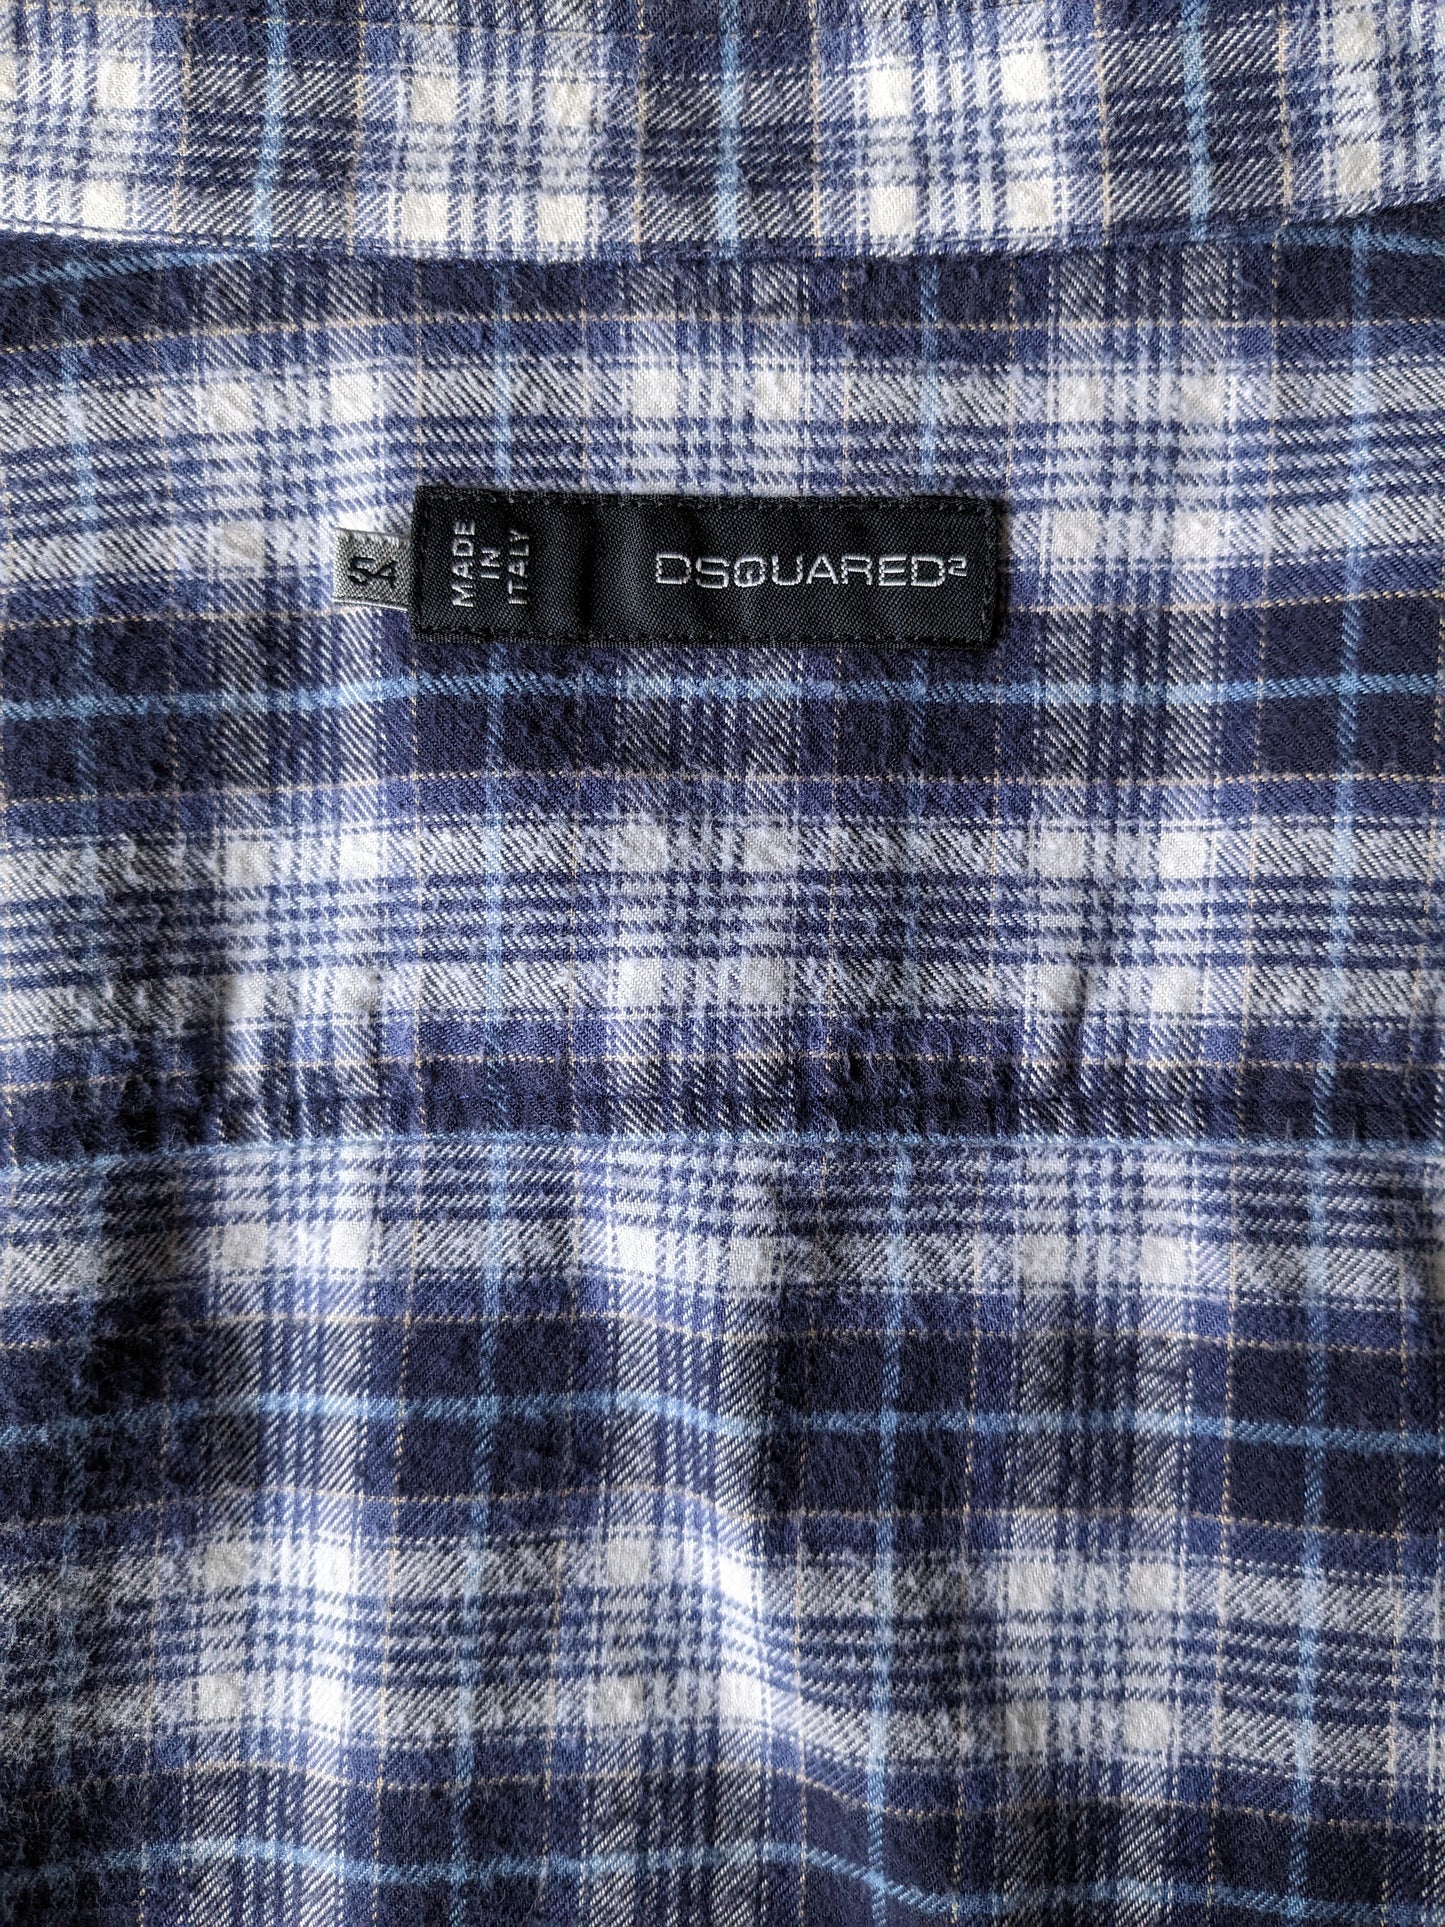 DSquared2 Flanellhemd. Blauer beige Checker. Größe 54 / L.